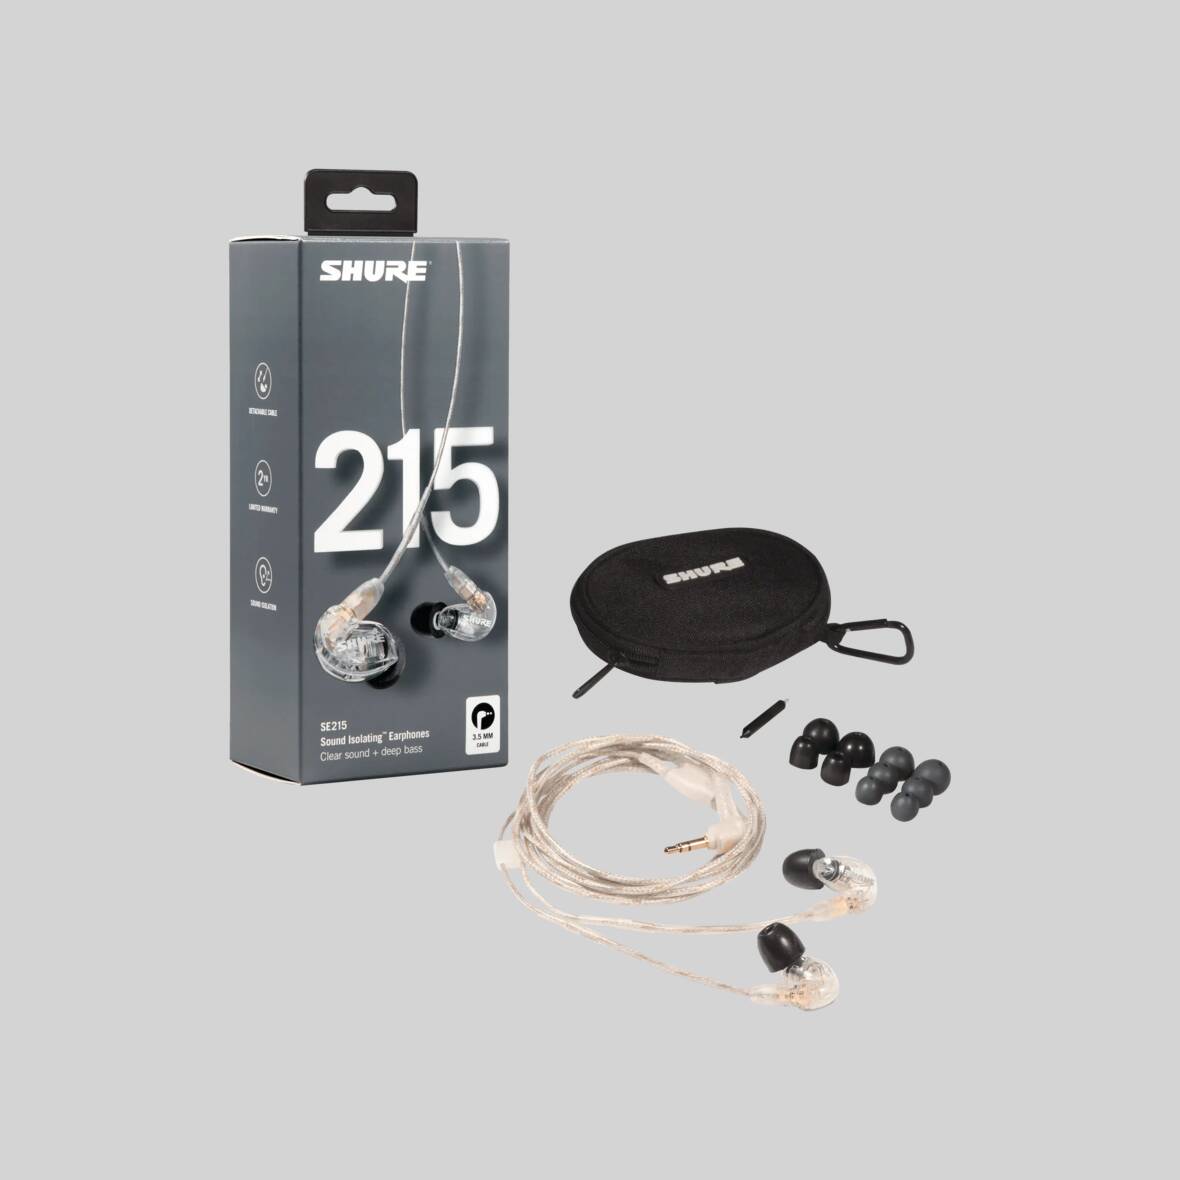 Shure Sound Isolating Earphones SE215 Black or Clear — AV Now Fitness Sound